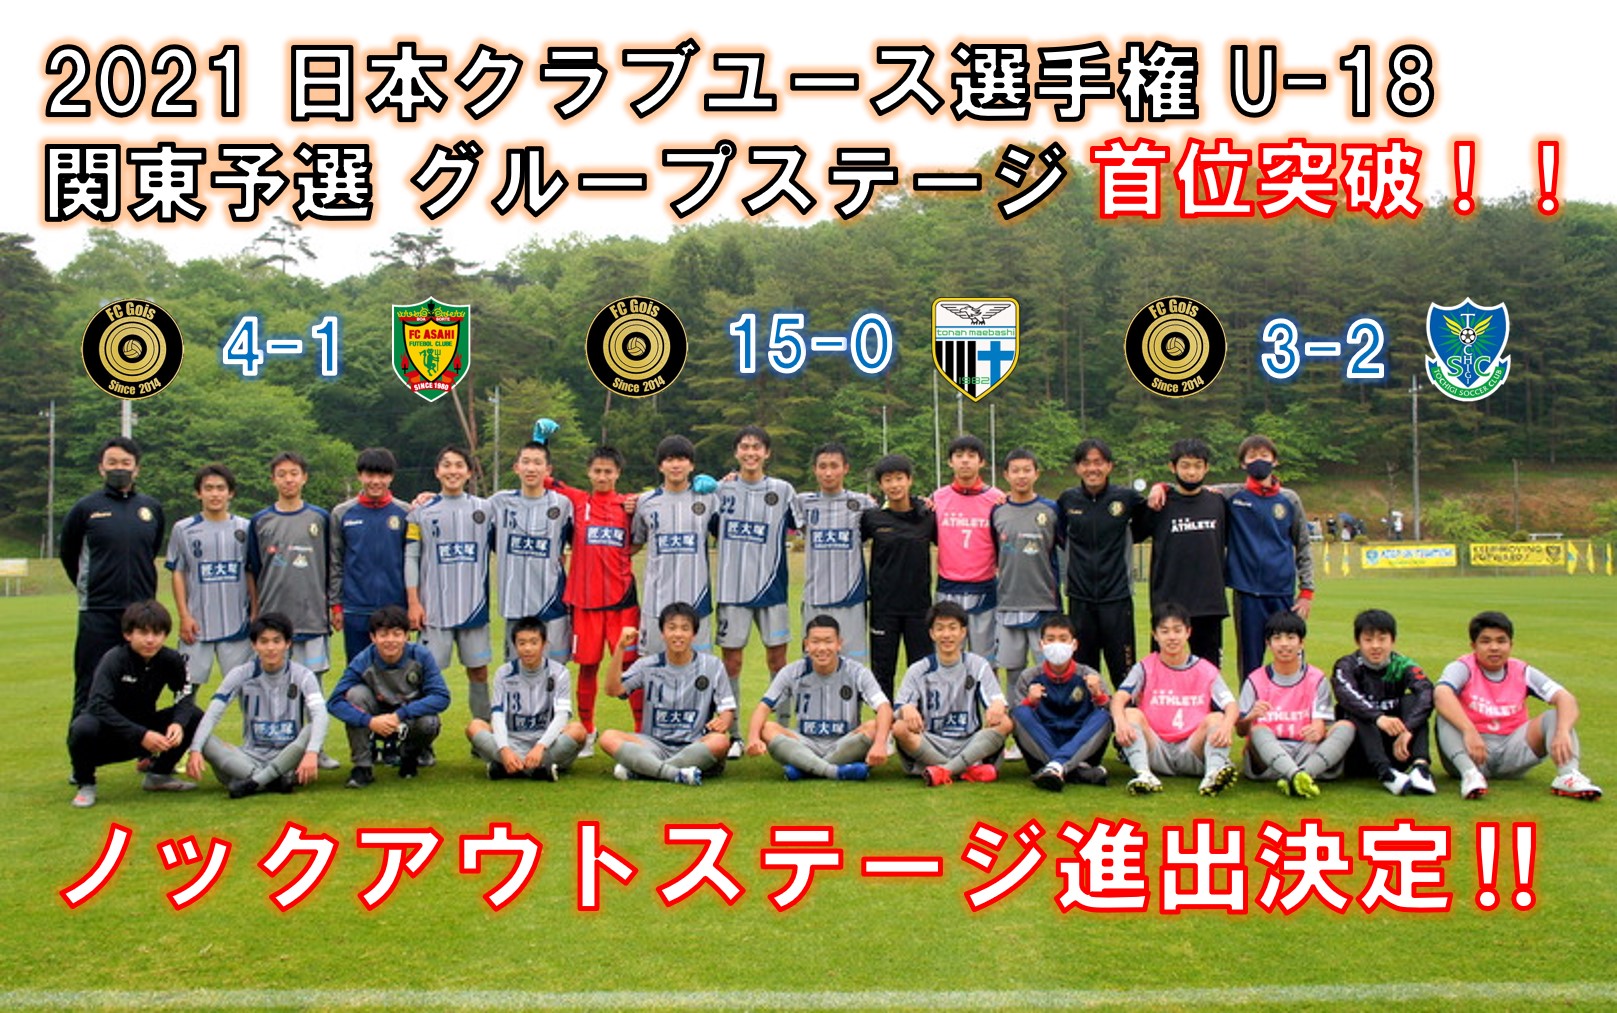 日本クラブユースサッカー選手権u 18 関東予選 21 グループステージ首位突破 公式 Fc Gois